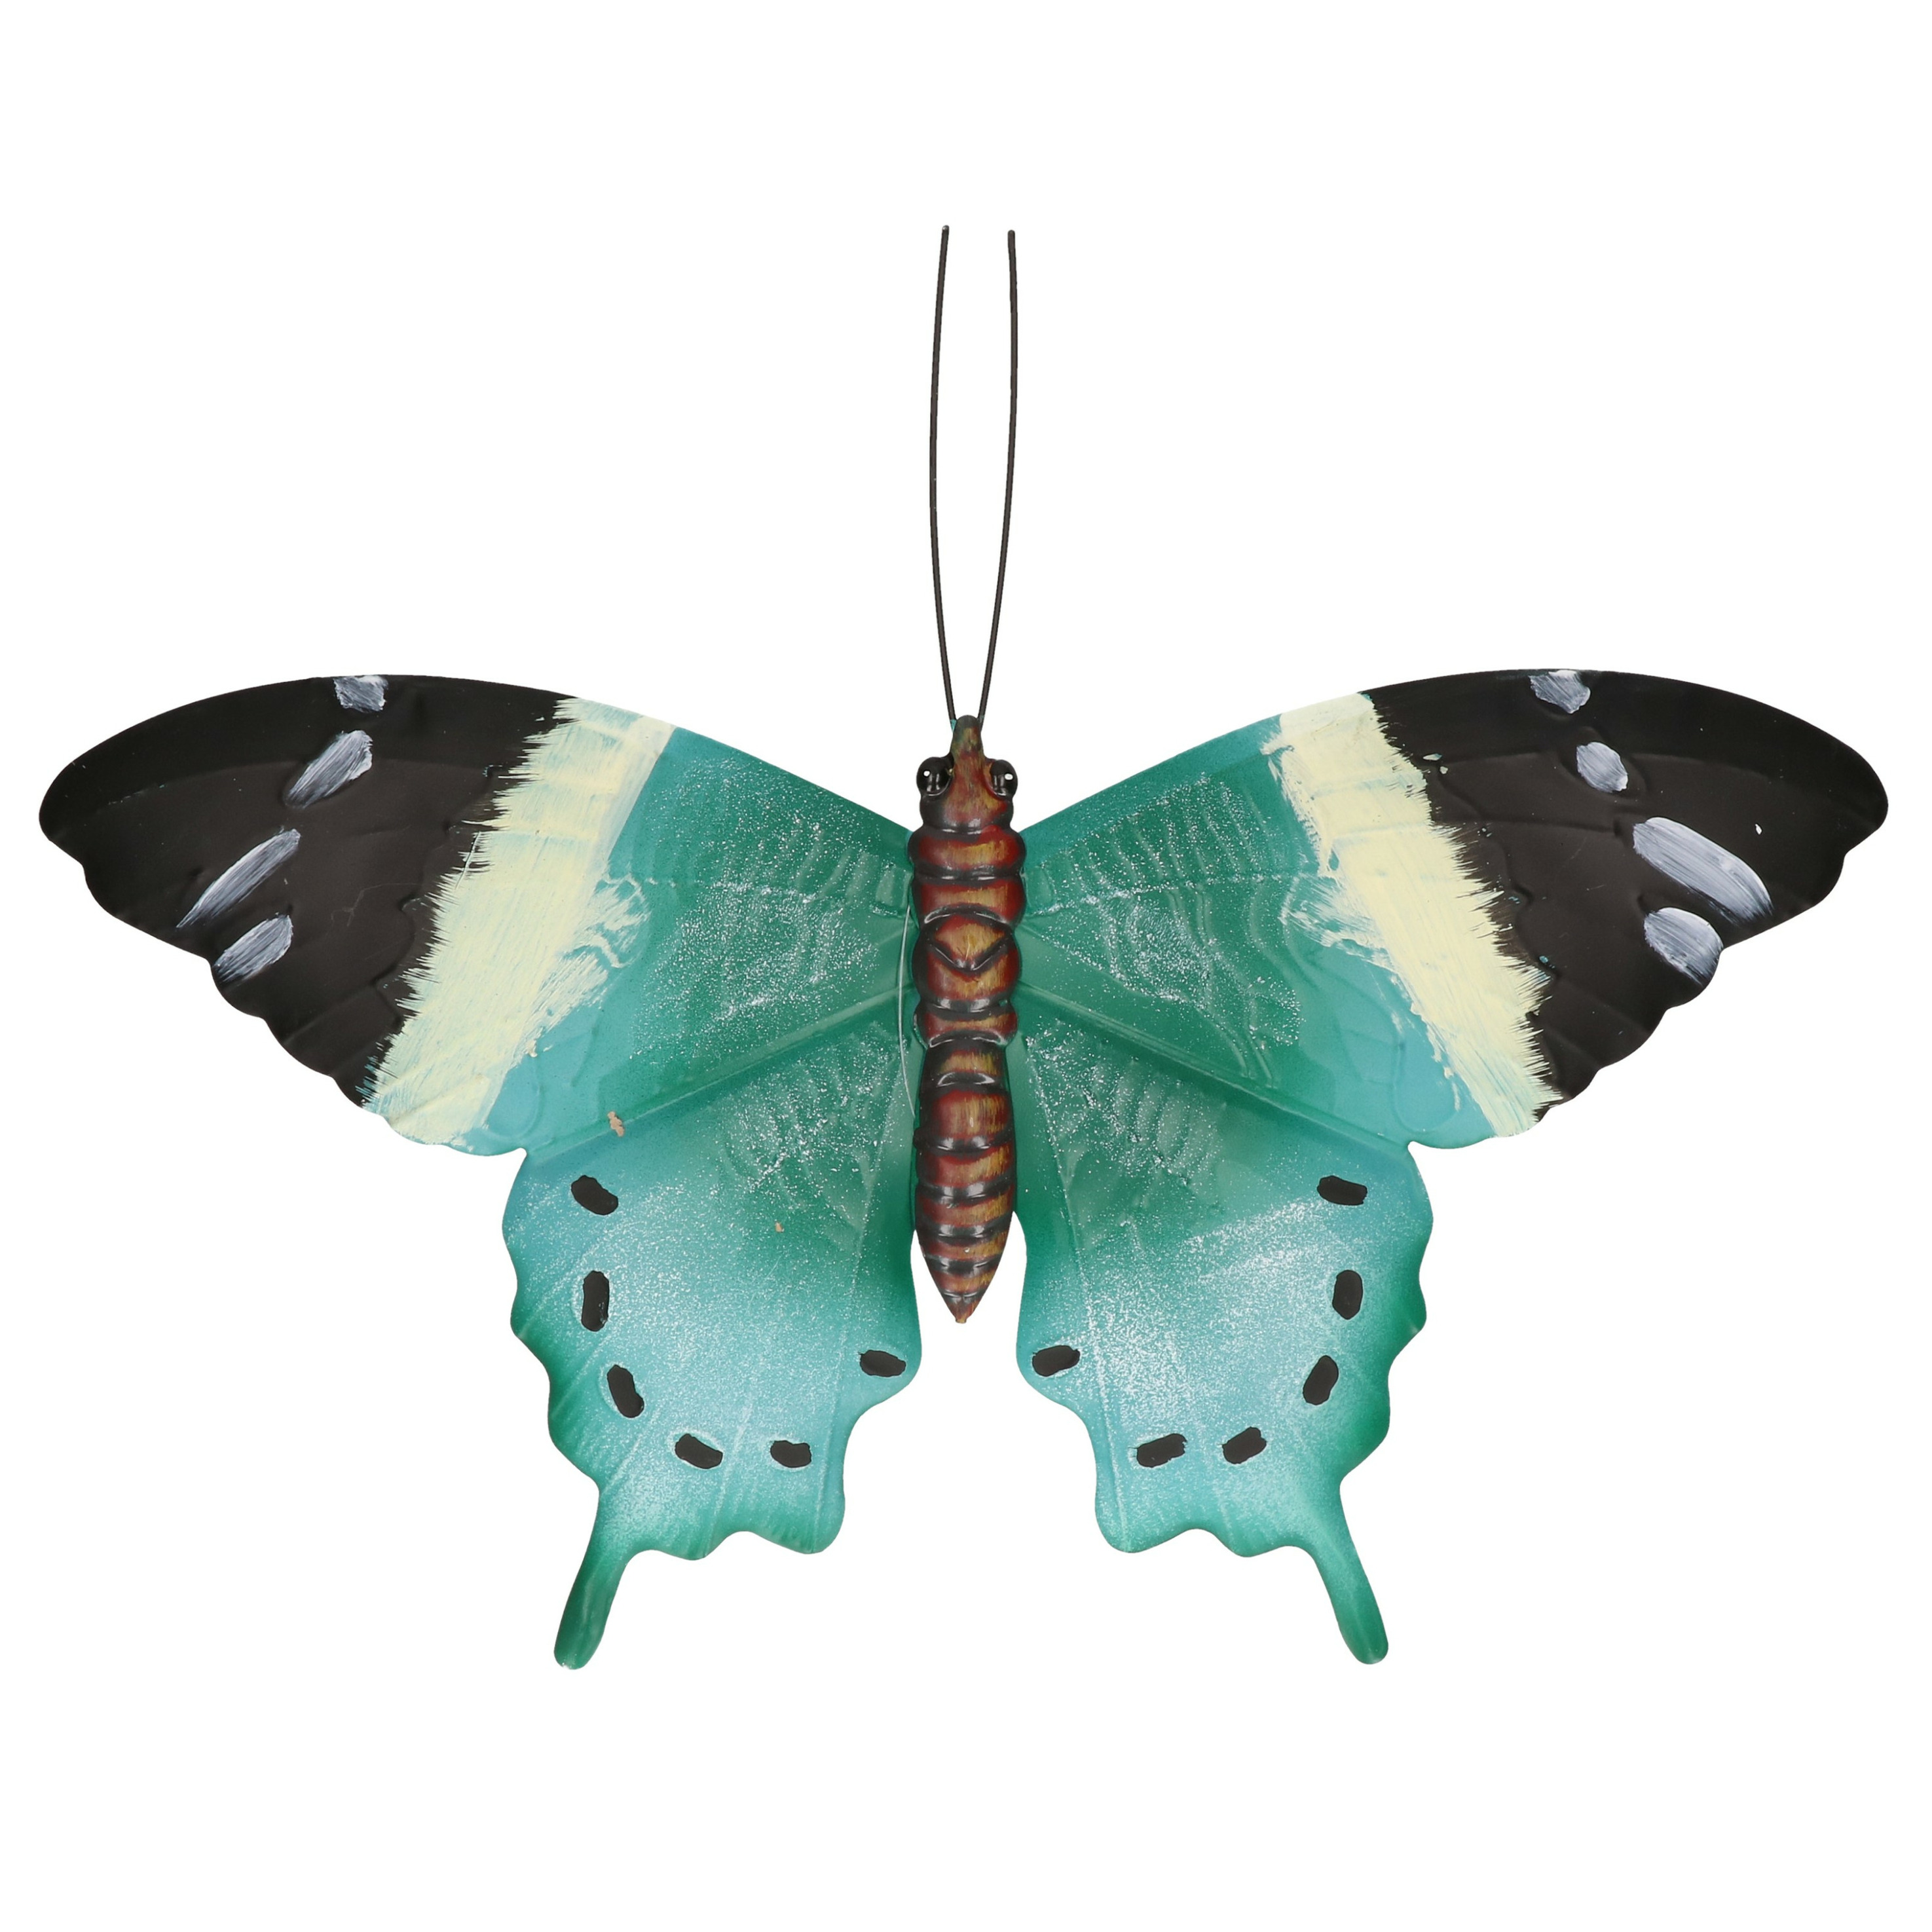 Tuin-schutting decoratie turquoise blauw-zwarte vlinder 44 cm